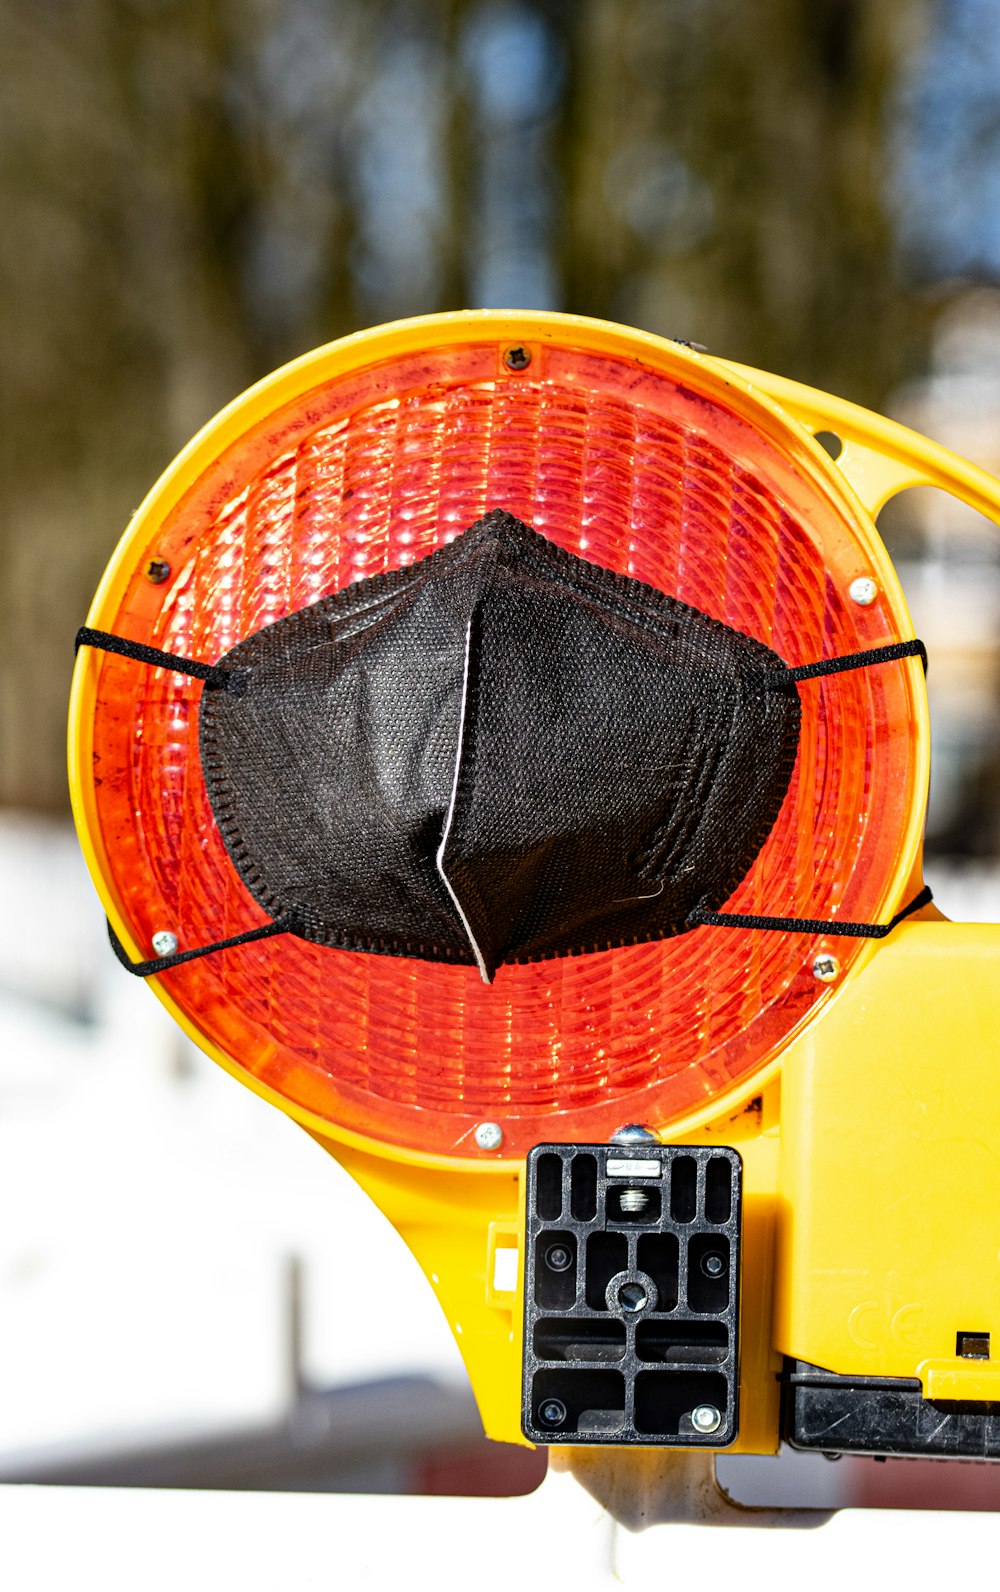 un semaforo giallo con una maschera facciale nera su di esso